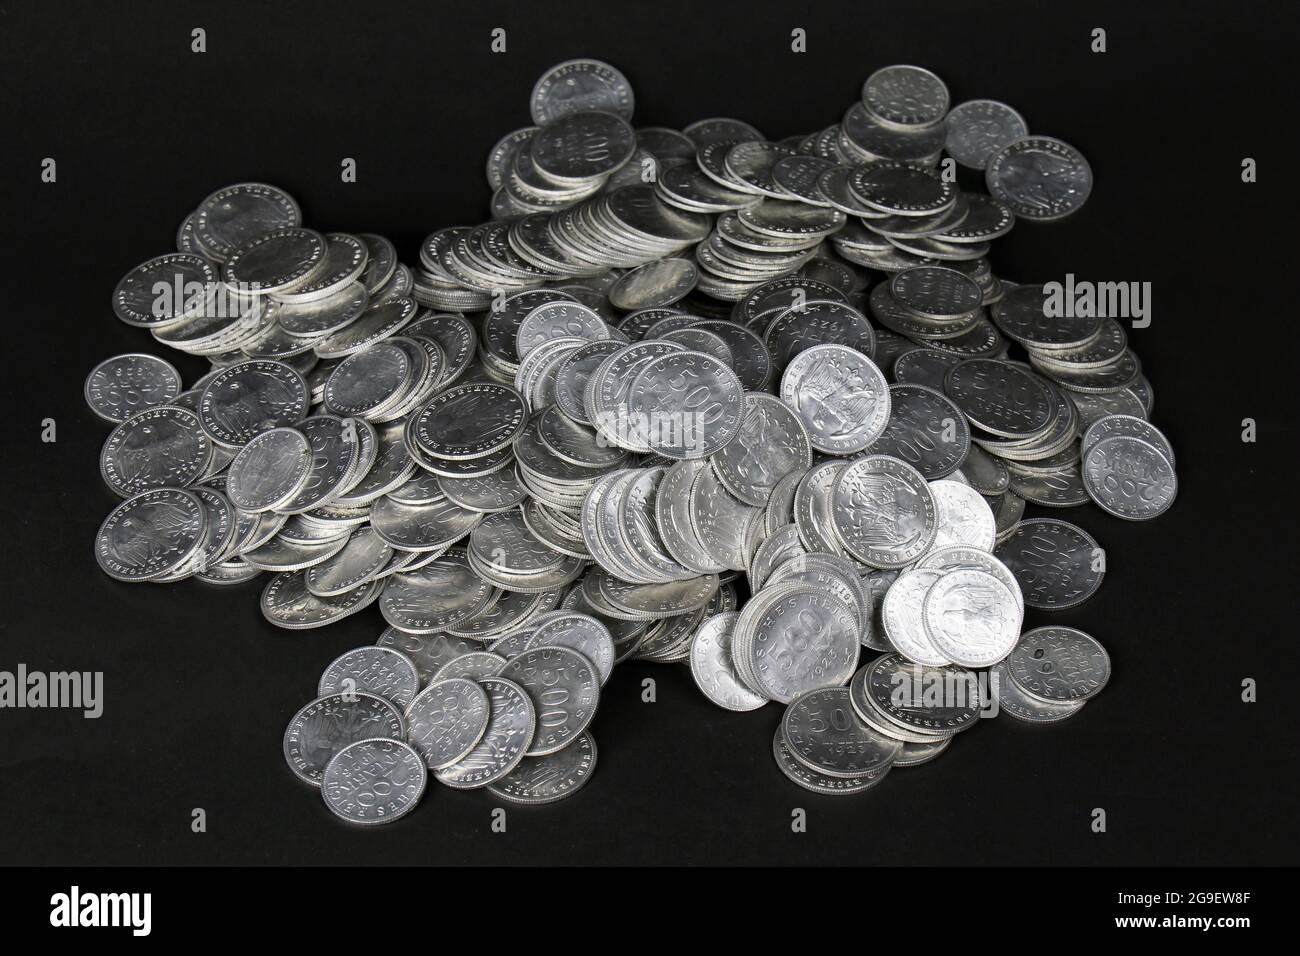 Geld / Finanzen, Münzen, Deutschland, Inflationsmünzen, 200 und 500 Mark,  Aluminium, Deutsches Reich, 1923,  ZUSÄTZLICHE-RIGHTS-CLEARANCE-INFO-NOT-AVAILABLE Stockfotografie - Alamy